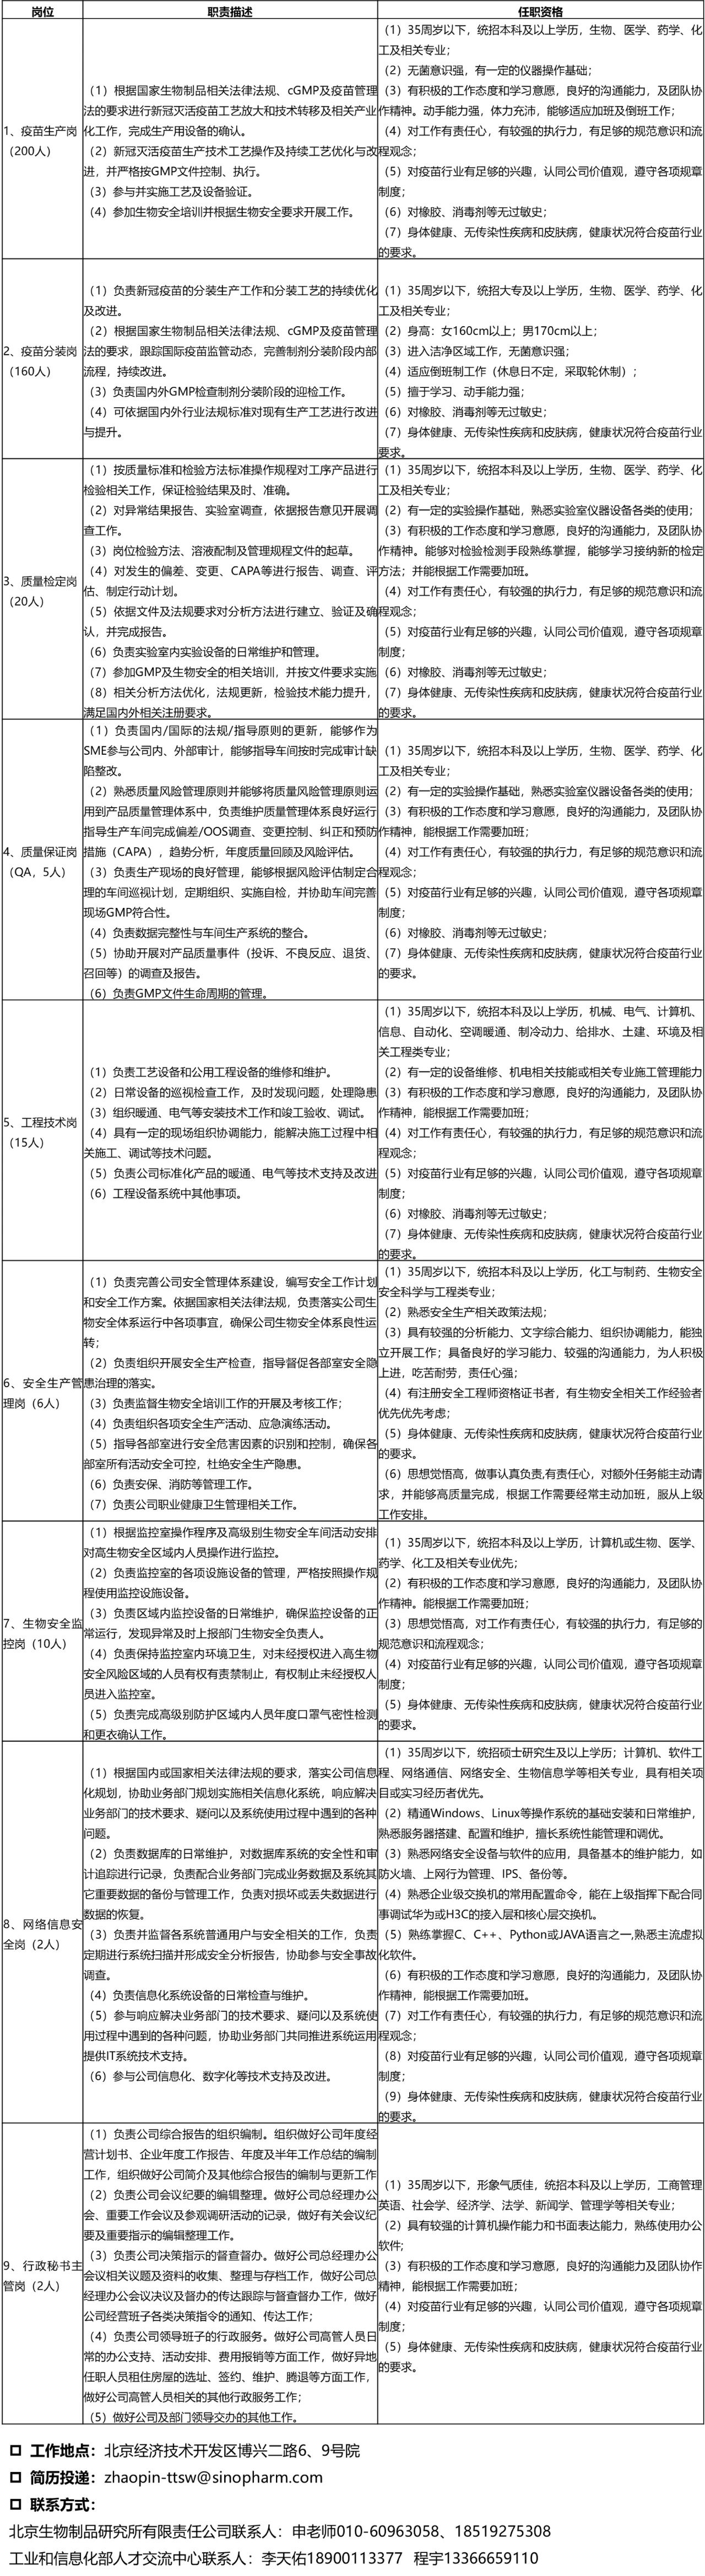 北京生物制品研究所有限责任公司招聘通知